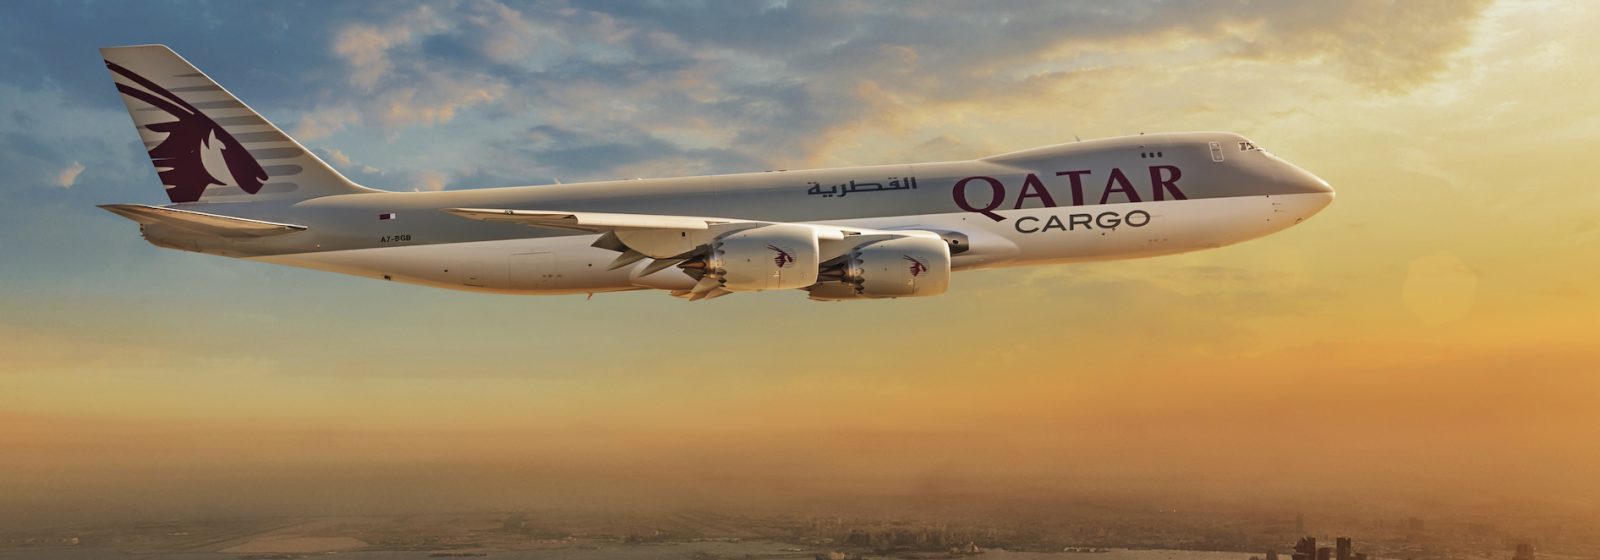 Boeing 747-vrachtvliegtuig van Qatar Airways Cargo.